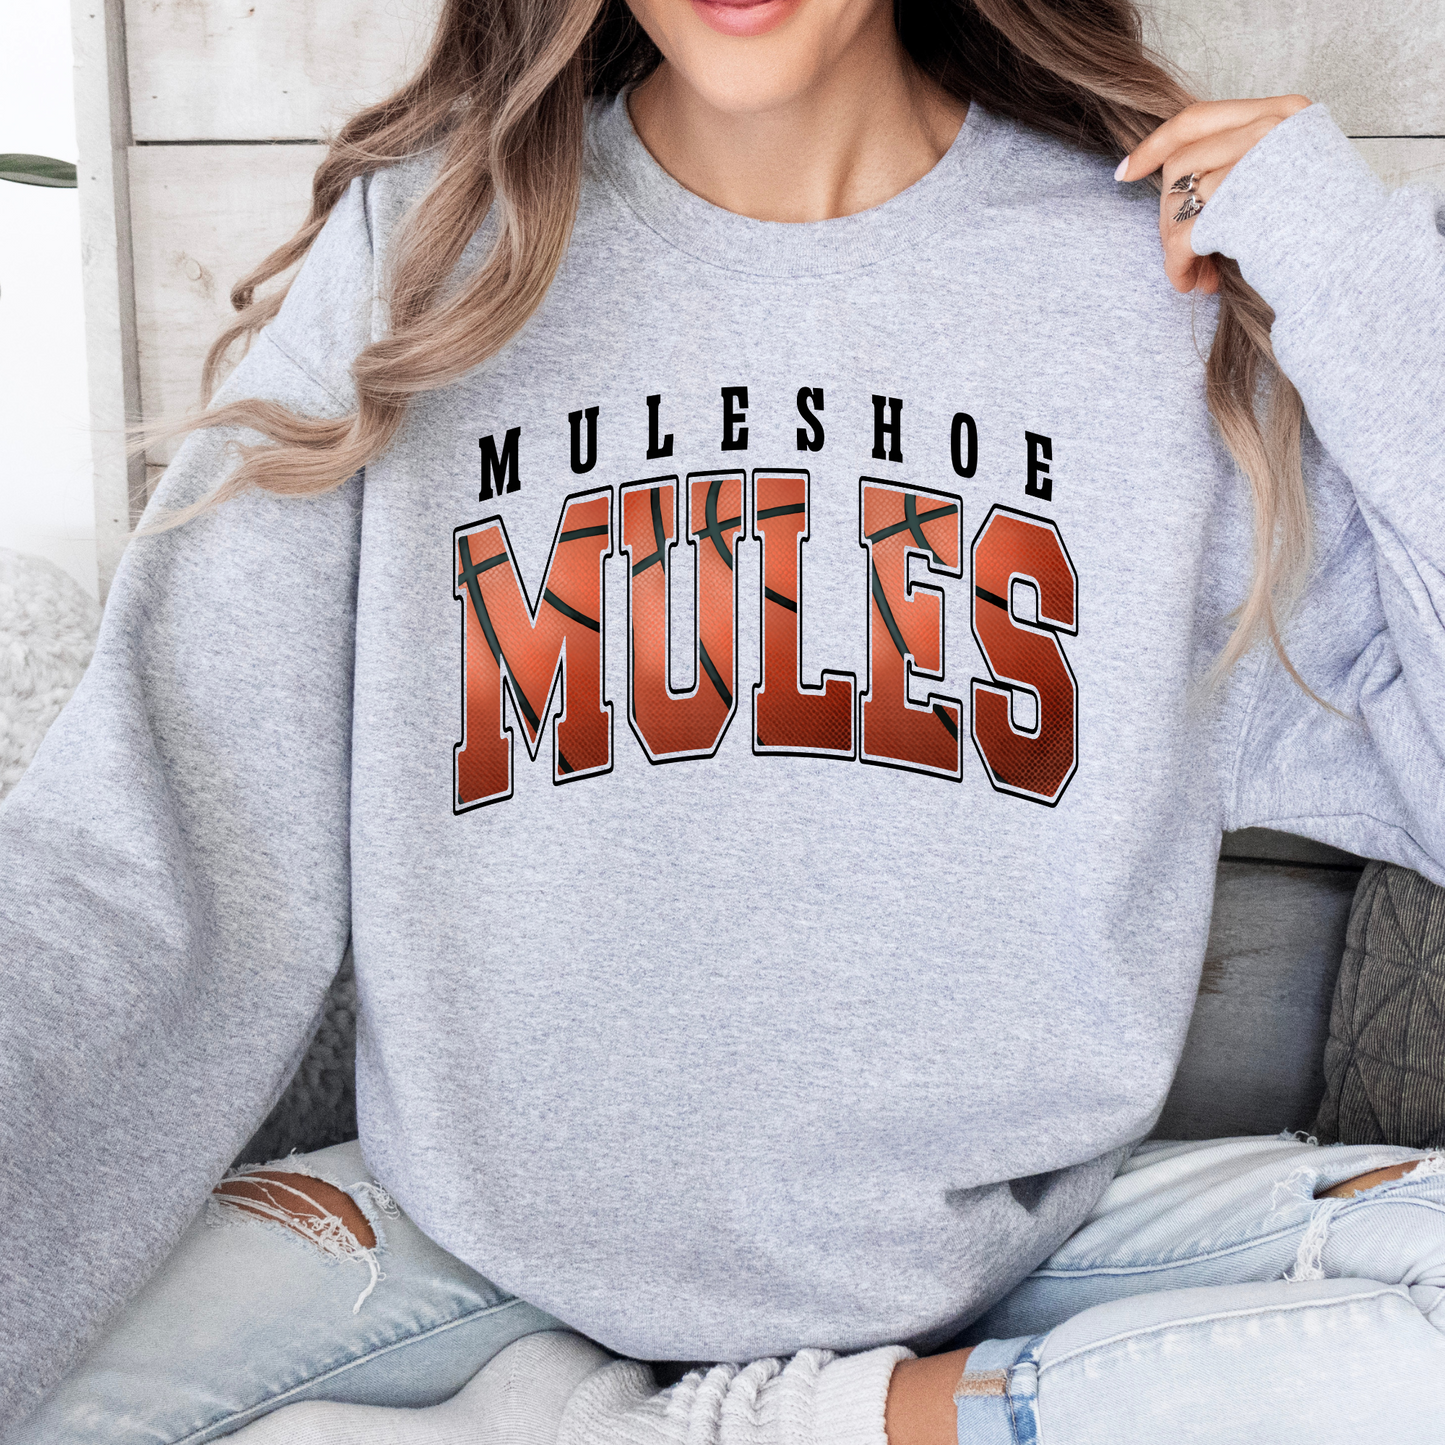 Muleshoe Mules Basketball DTF Transfer